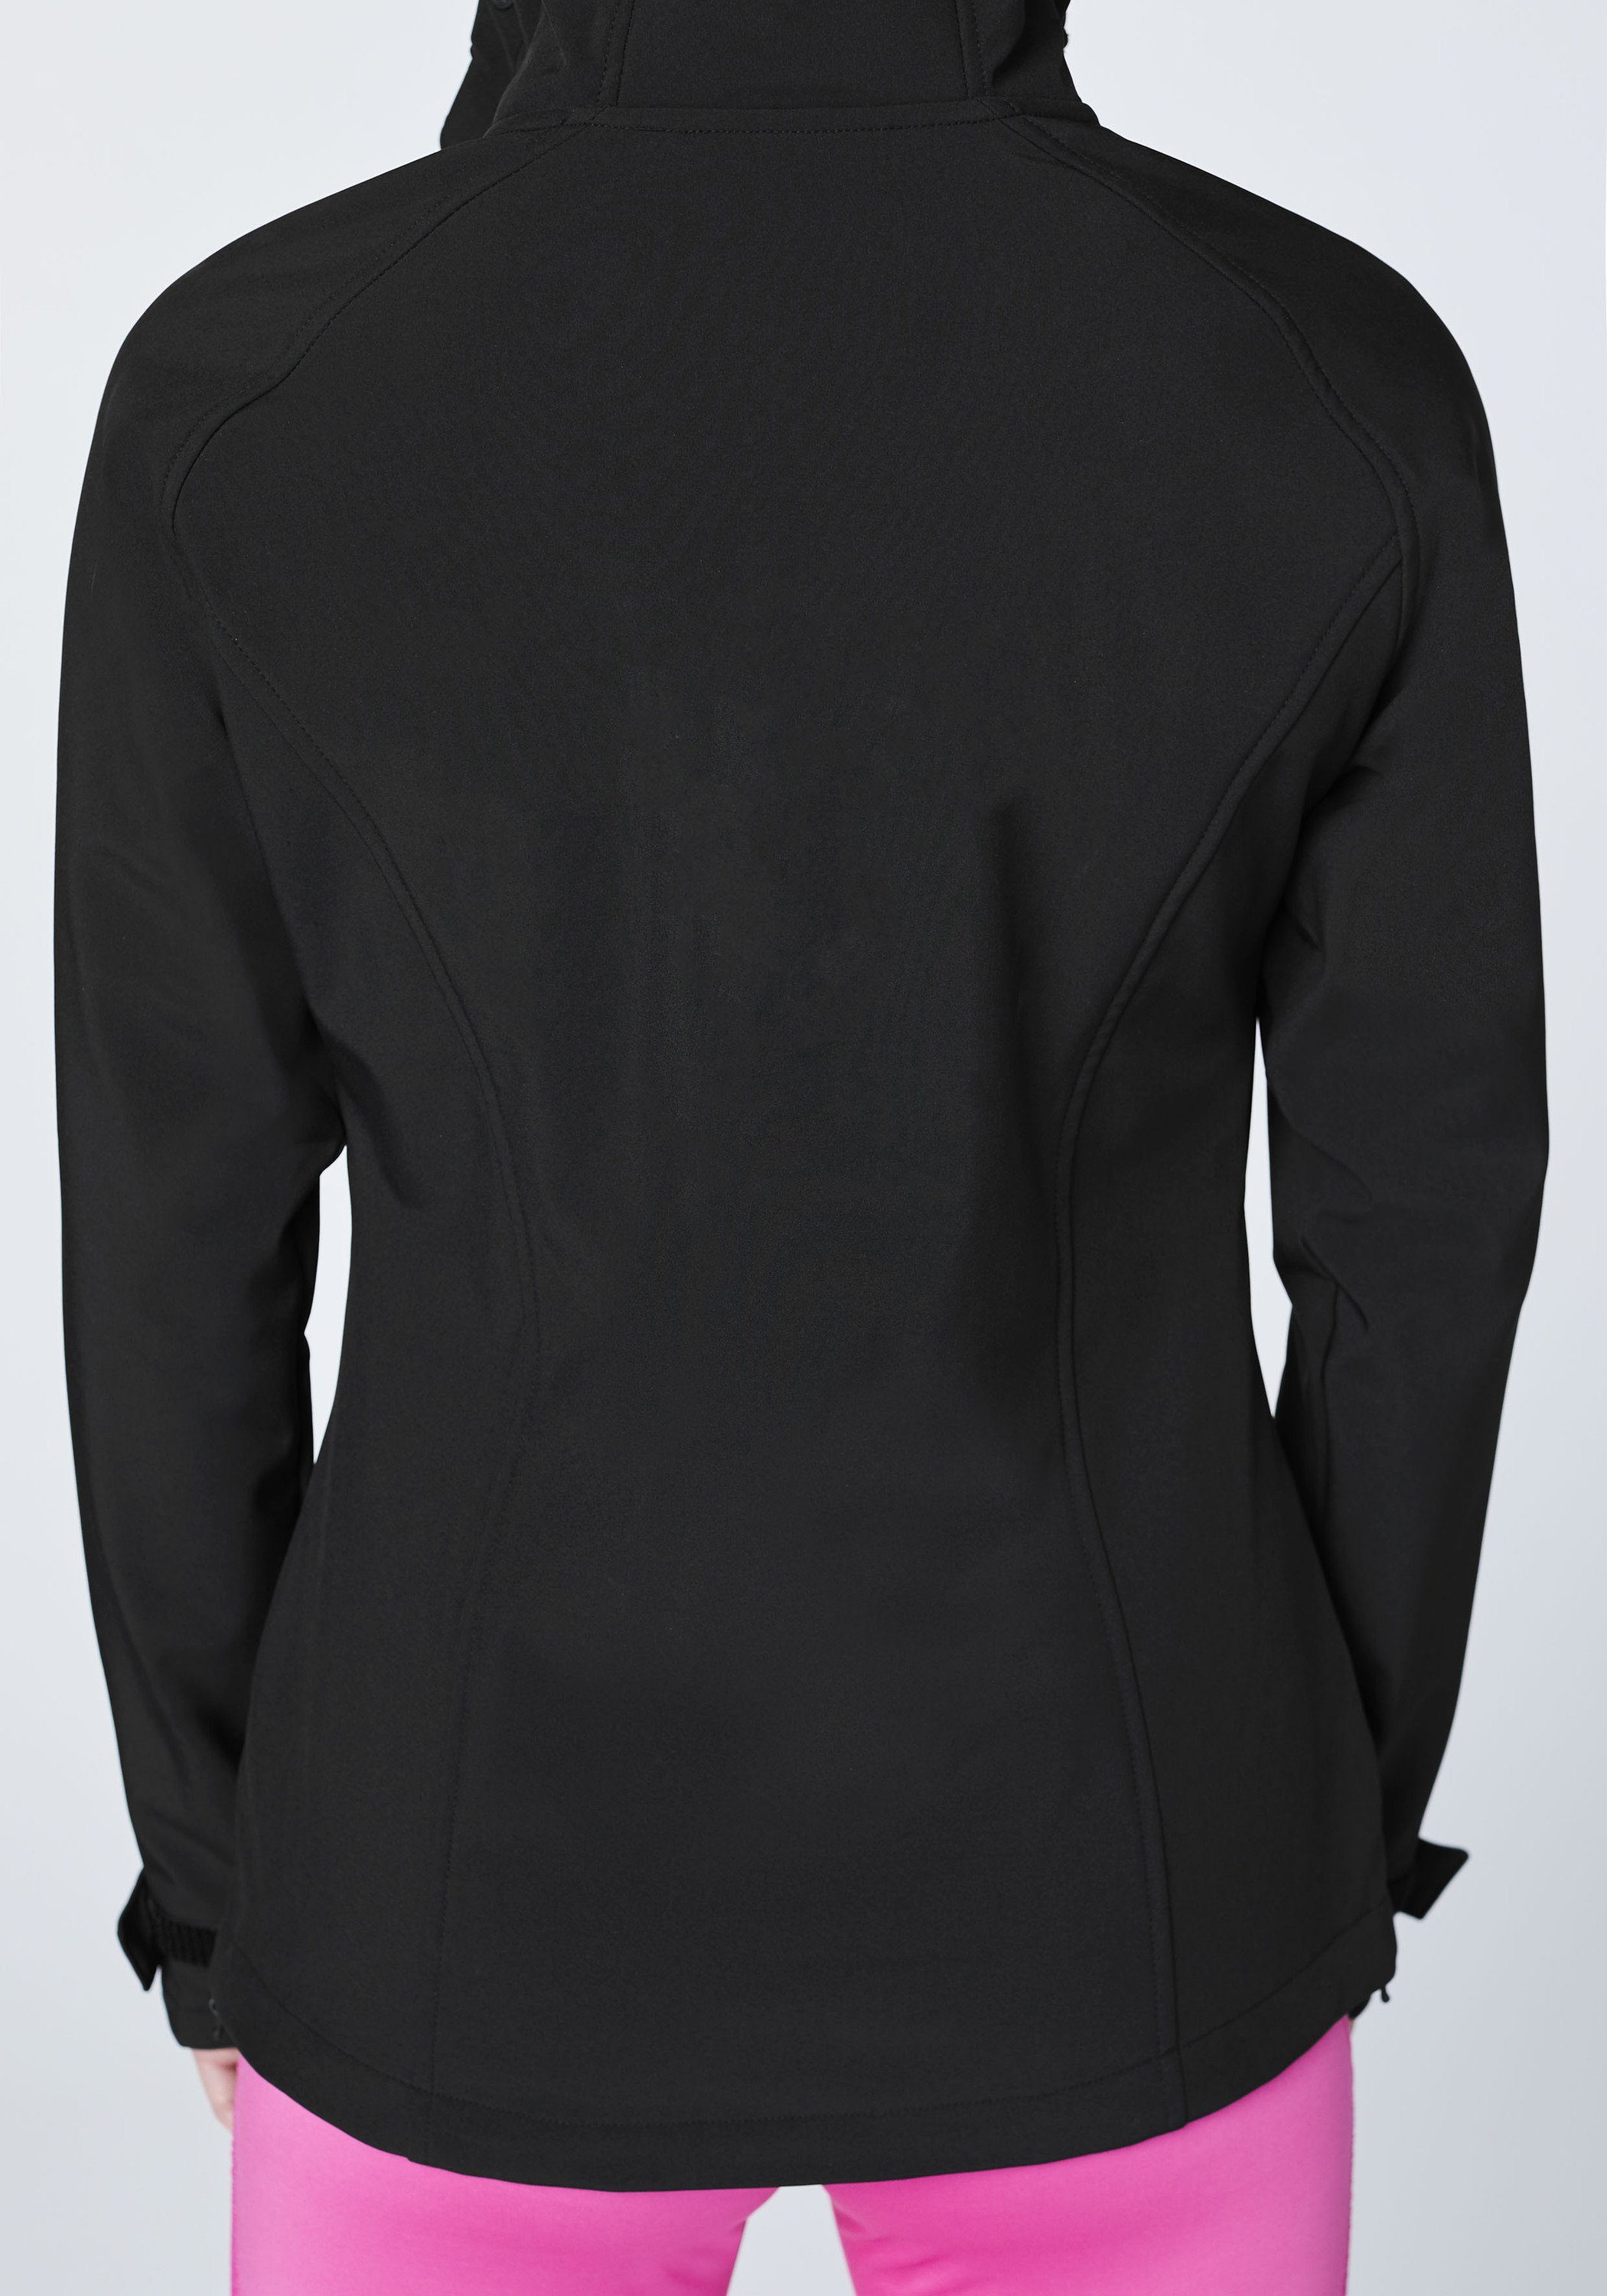 Chiemsee Softshelljacke Softshell-Jacke im 1 funktionalen schwarz Design